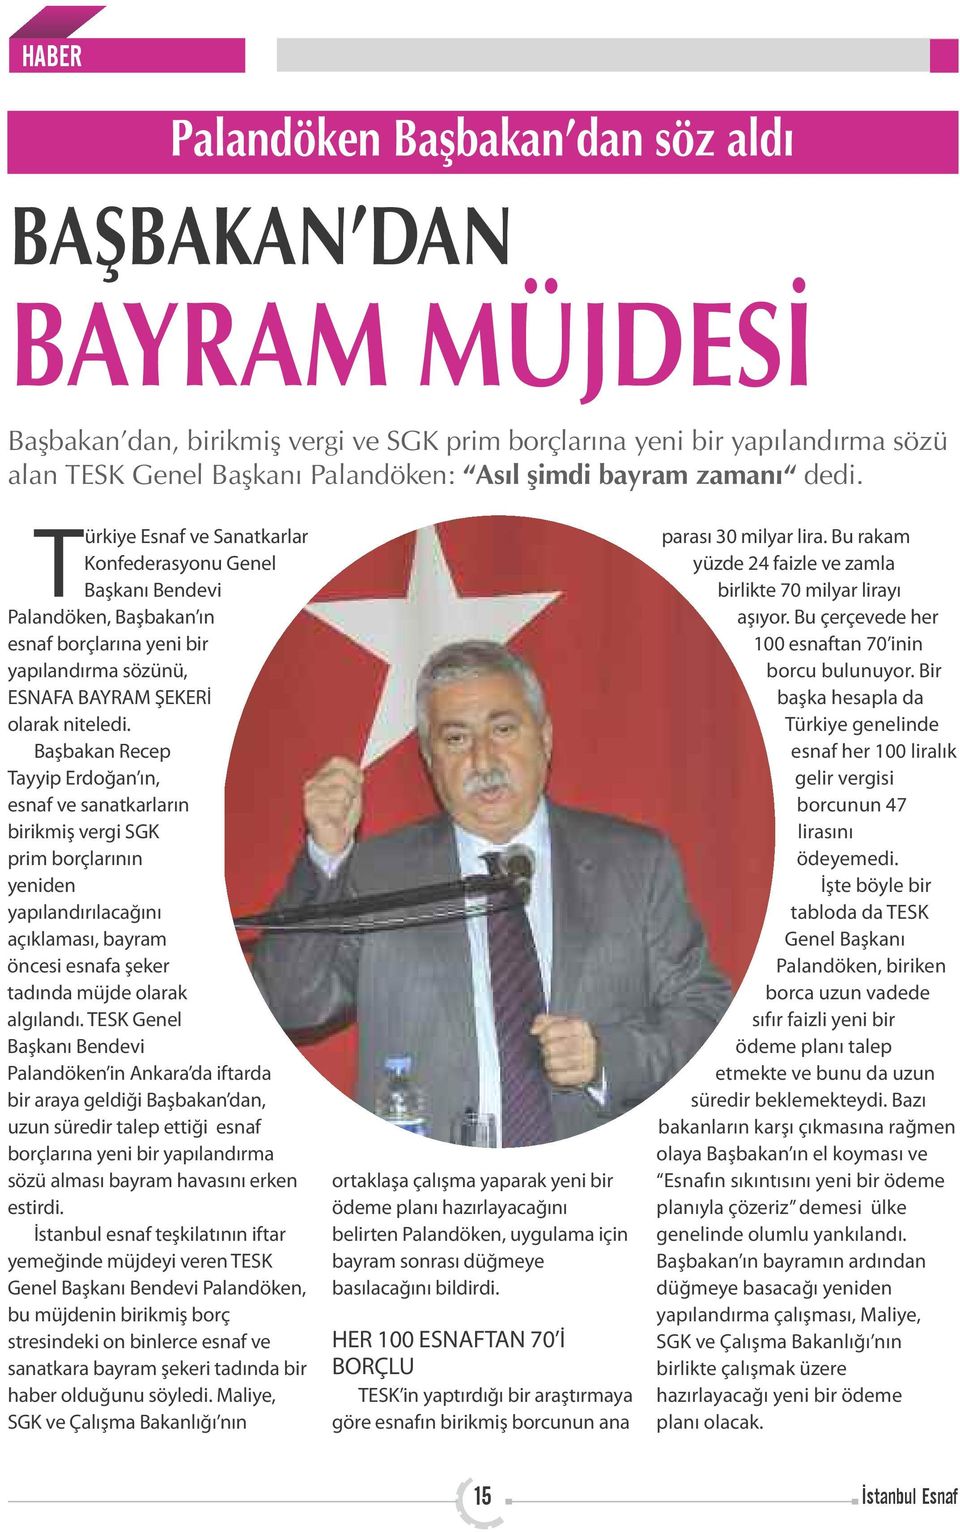 Başbakan Recep Tayyip Erdoğan ın, esnaf ve sanatkarların birikmiş vergi SGK prim borçlarının yeniden yapılandırılacağını açıklaması, bayram öncesi esnafa şeker tadında müjde olarak algılandı.